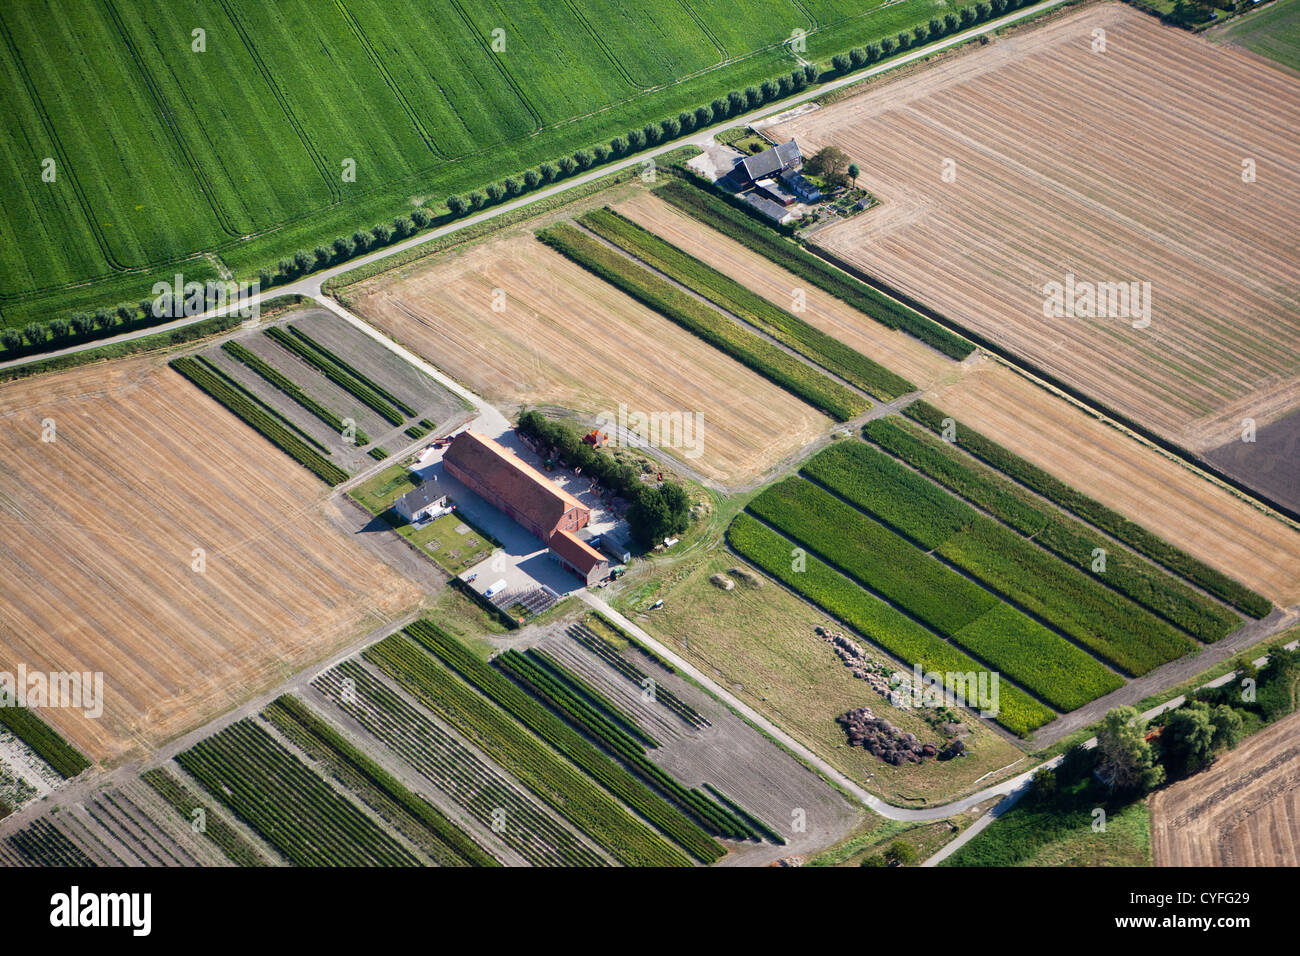 Den Niederlanden, verbessern, Landseite. Farmen und Ackerland. Luft. Stockfoto